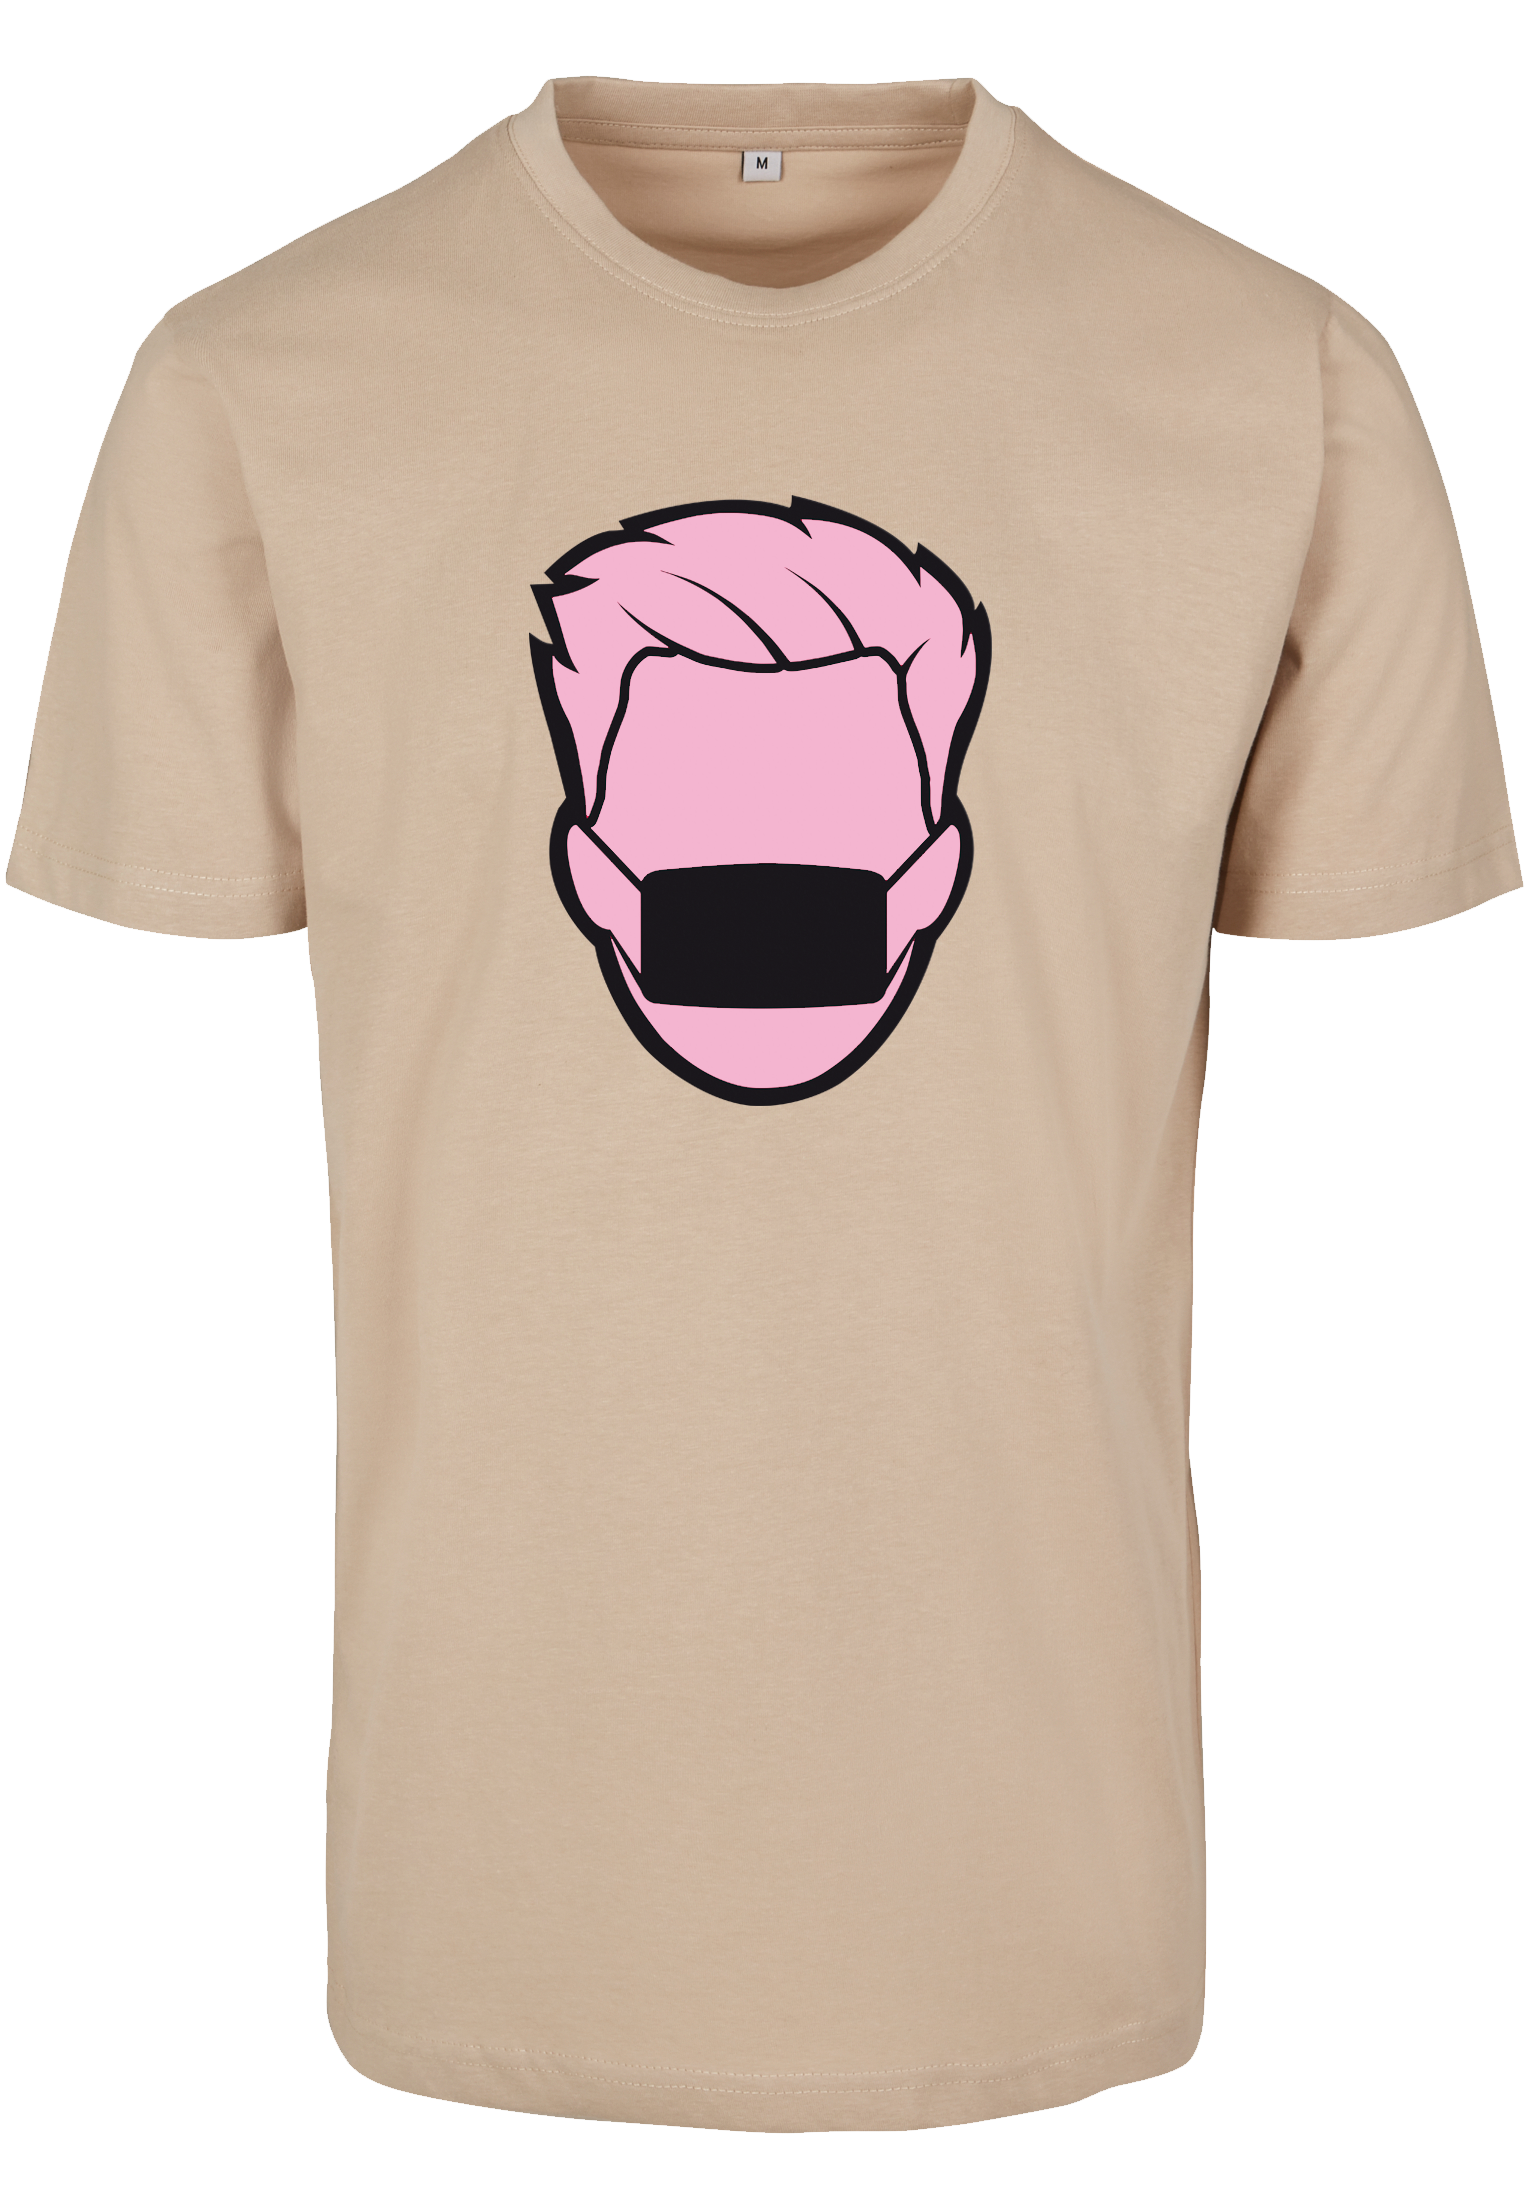 Pinkcole sand T-Shirt